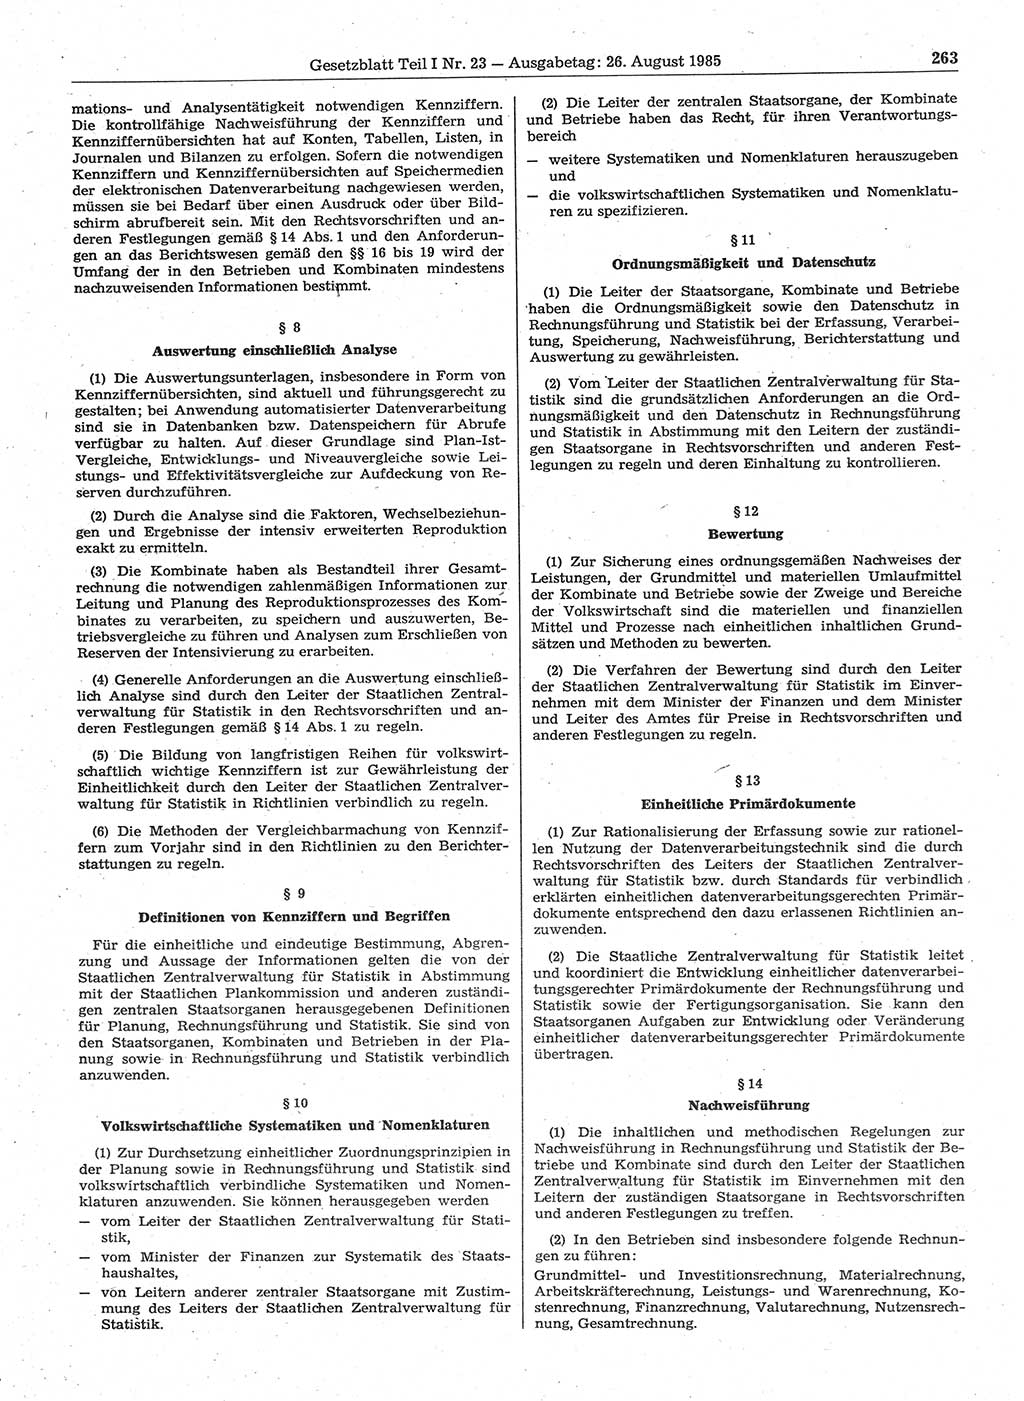 Gesetzblatt (GBl.) der Deutschen Demokratischen Republik (DDR) Teil Ⅰ 1985, Seite 263 (GBl. DDR Ⅰ 1985, S. 263)